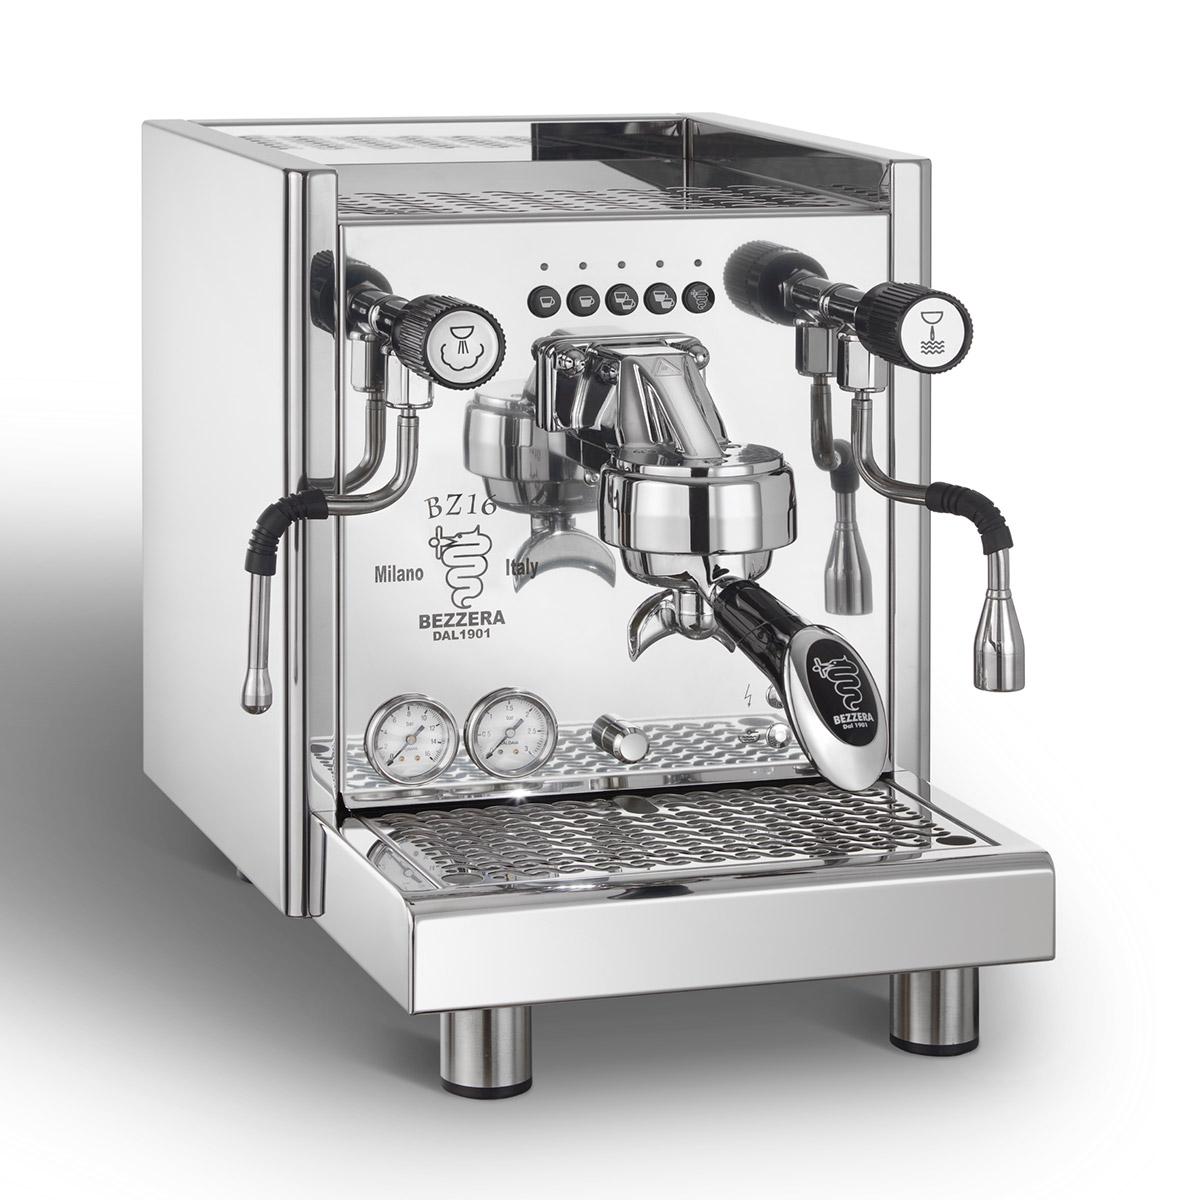 Bezzera BZ10S espresso machine